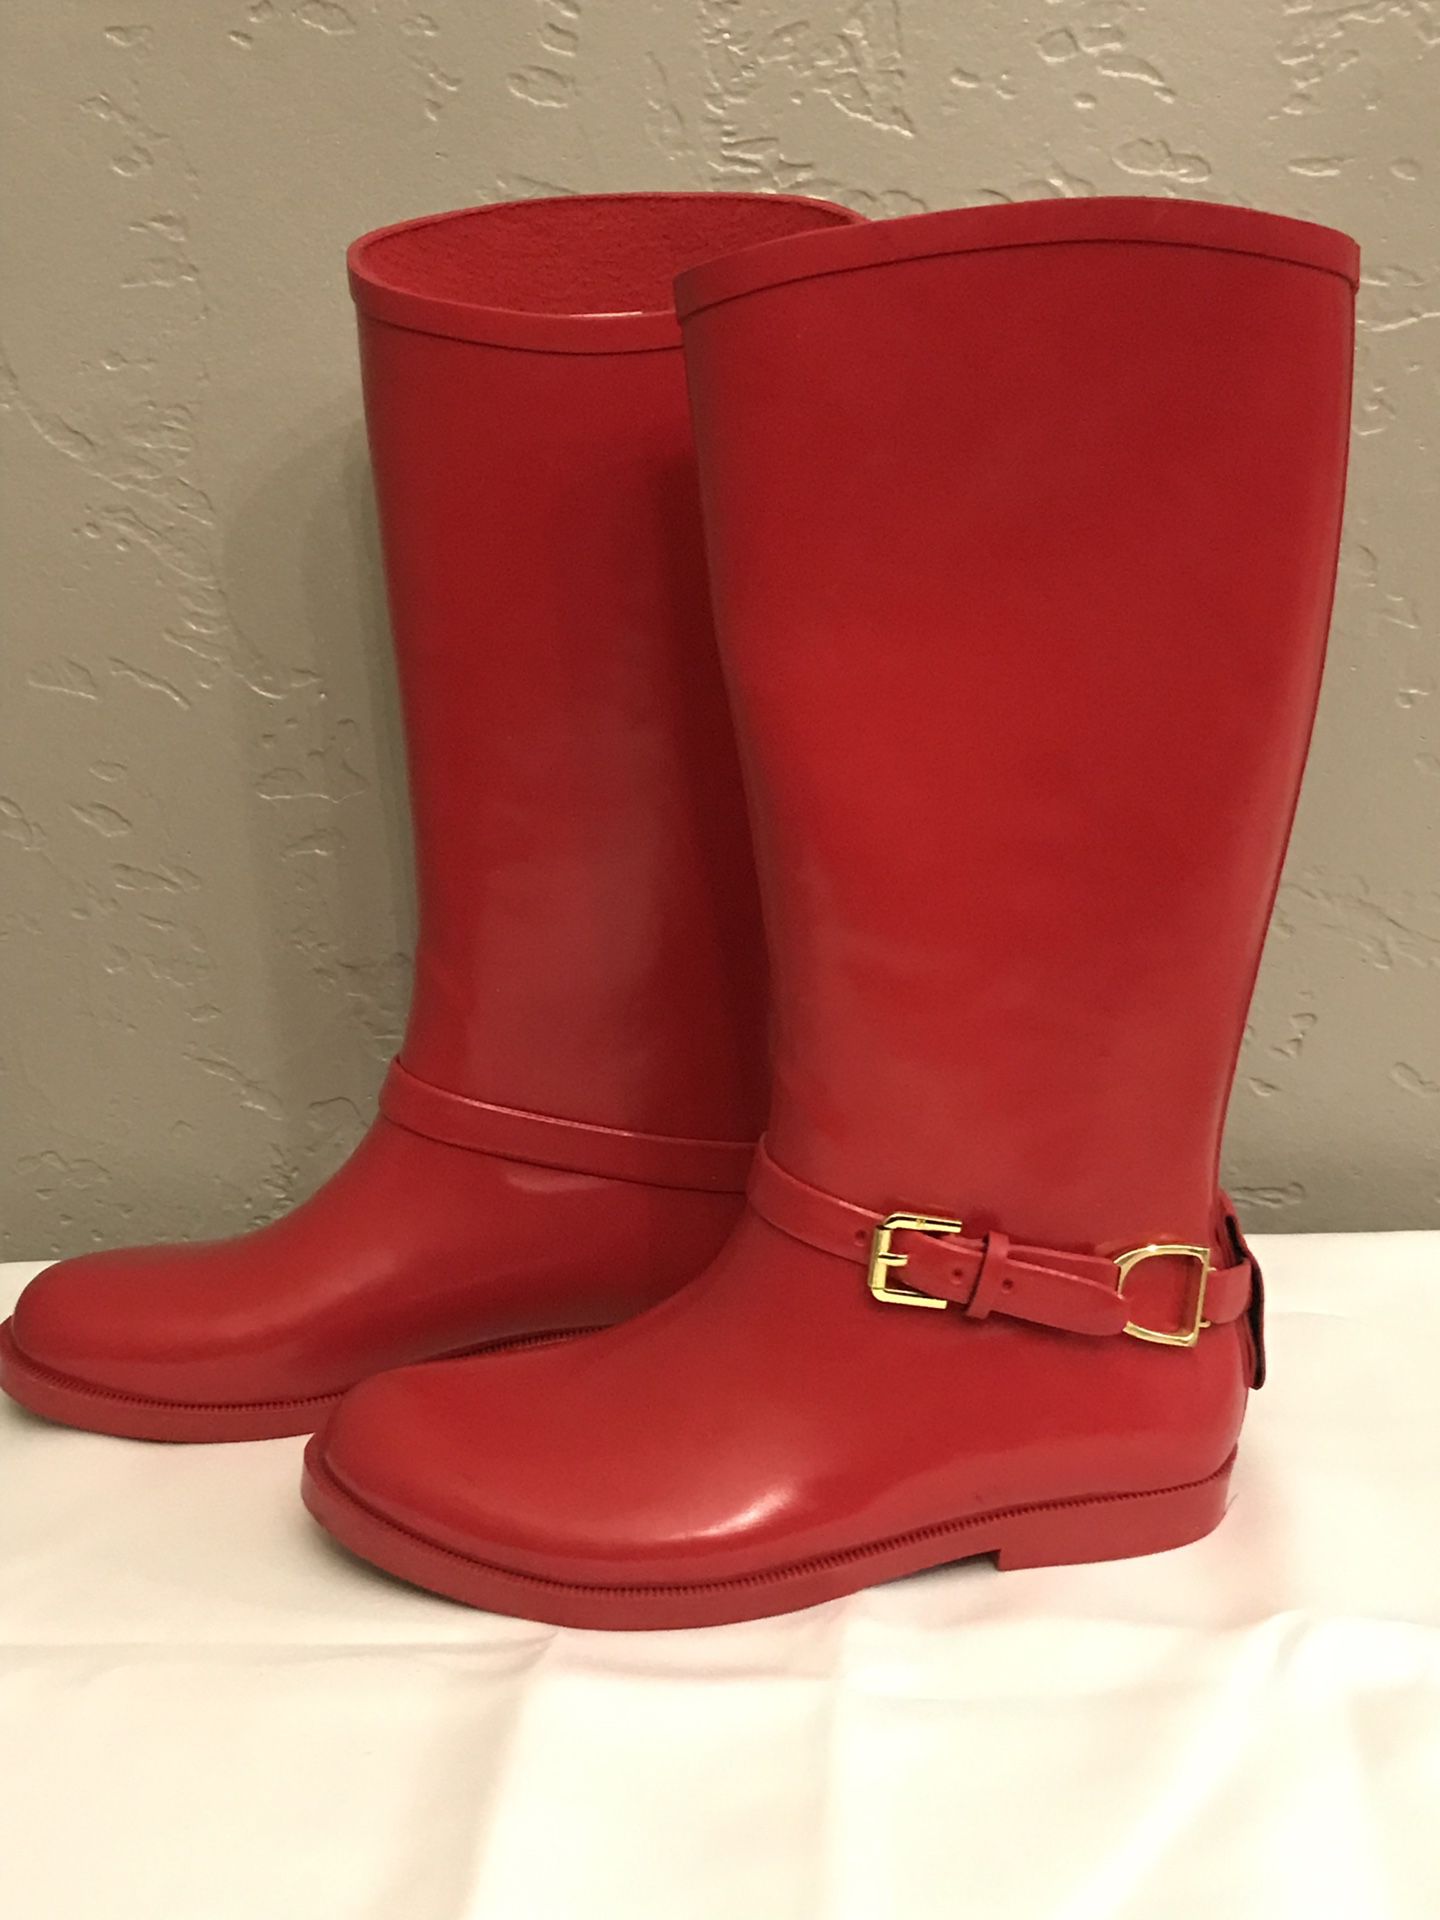 Girls Ralph Lauren Rain boots size 3